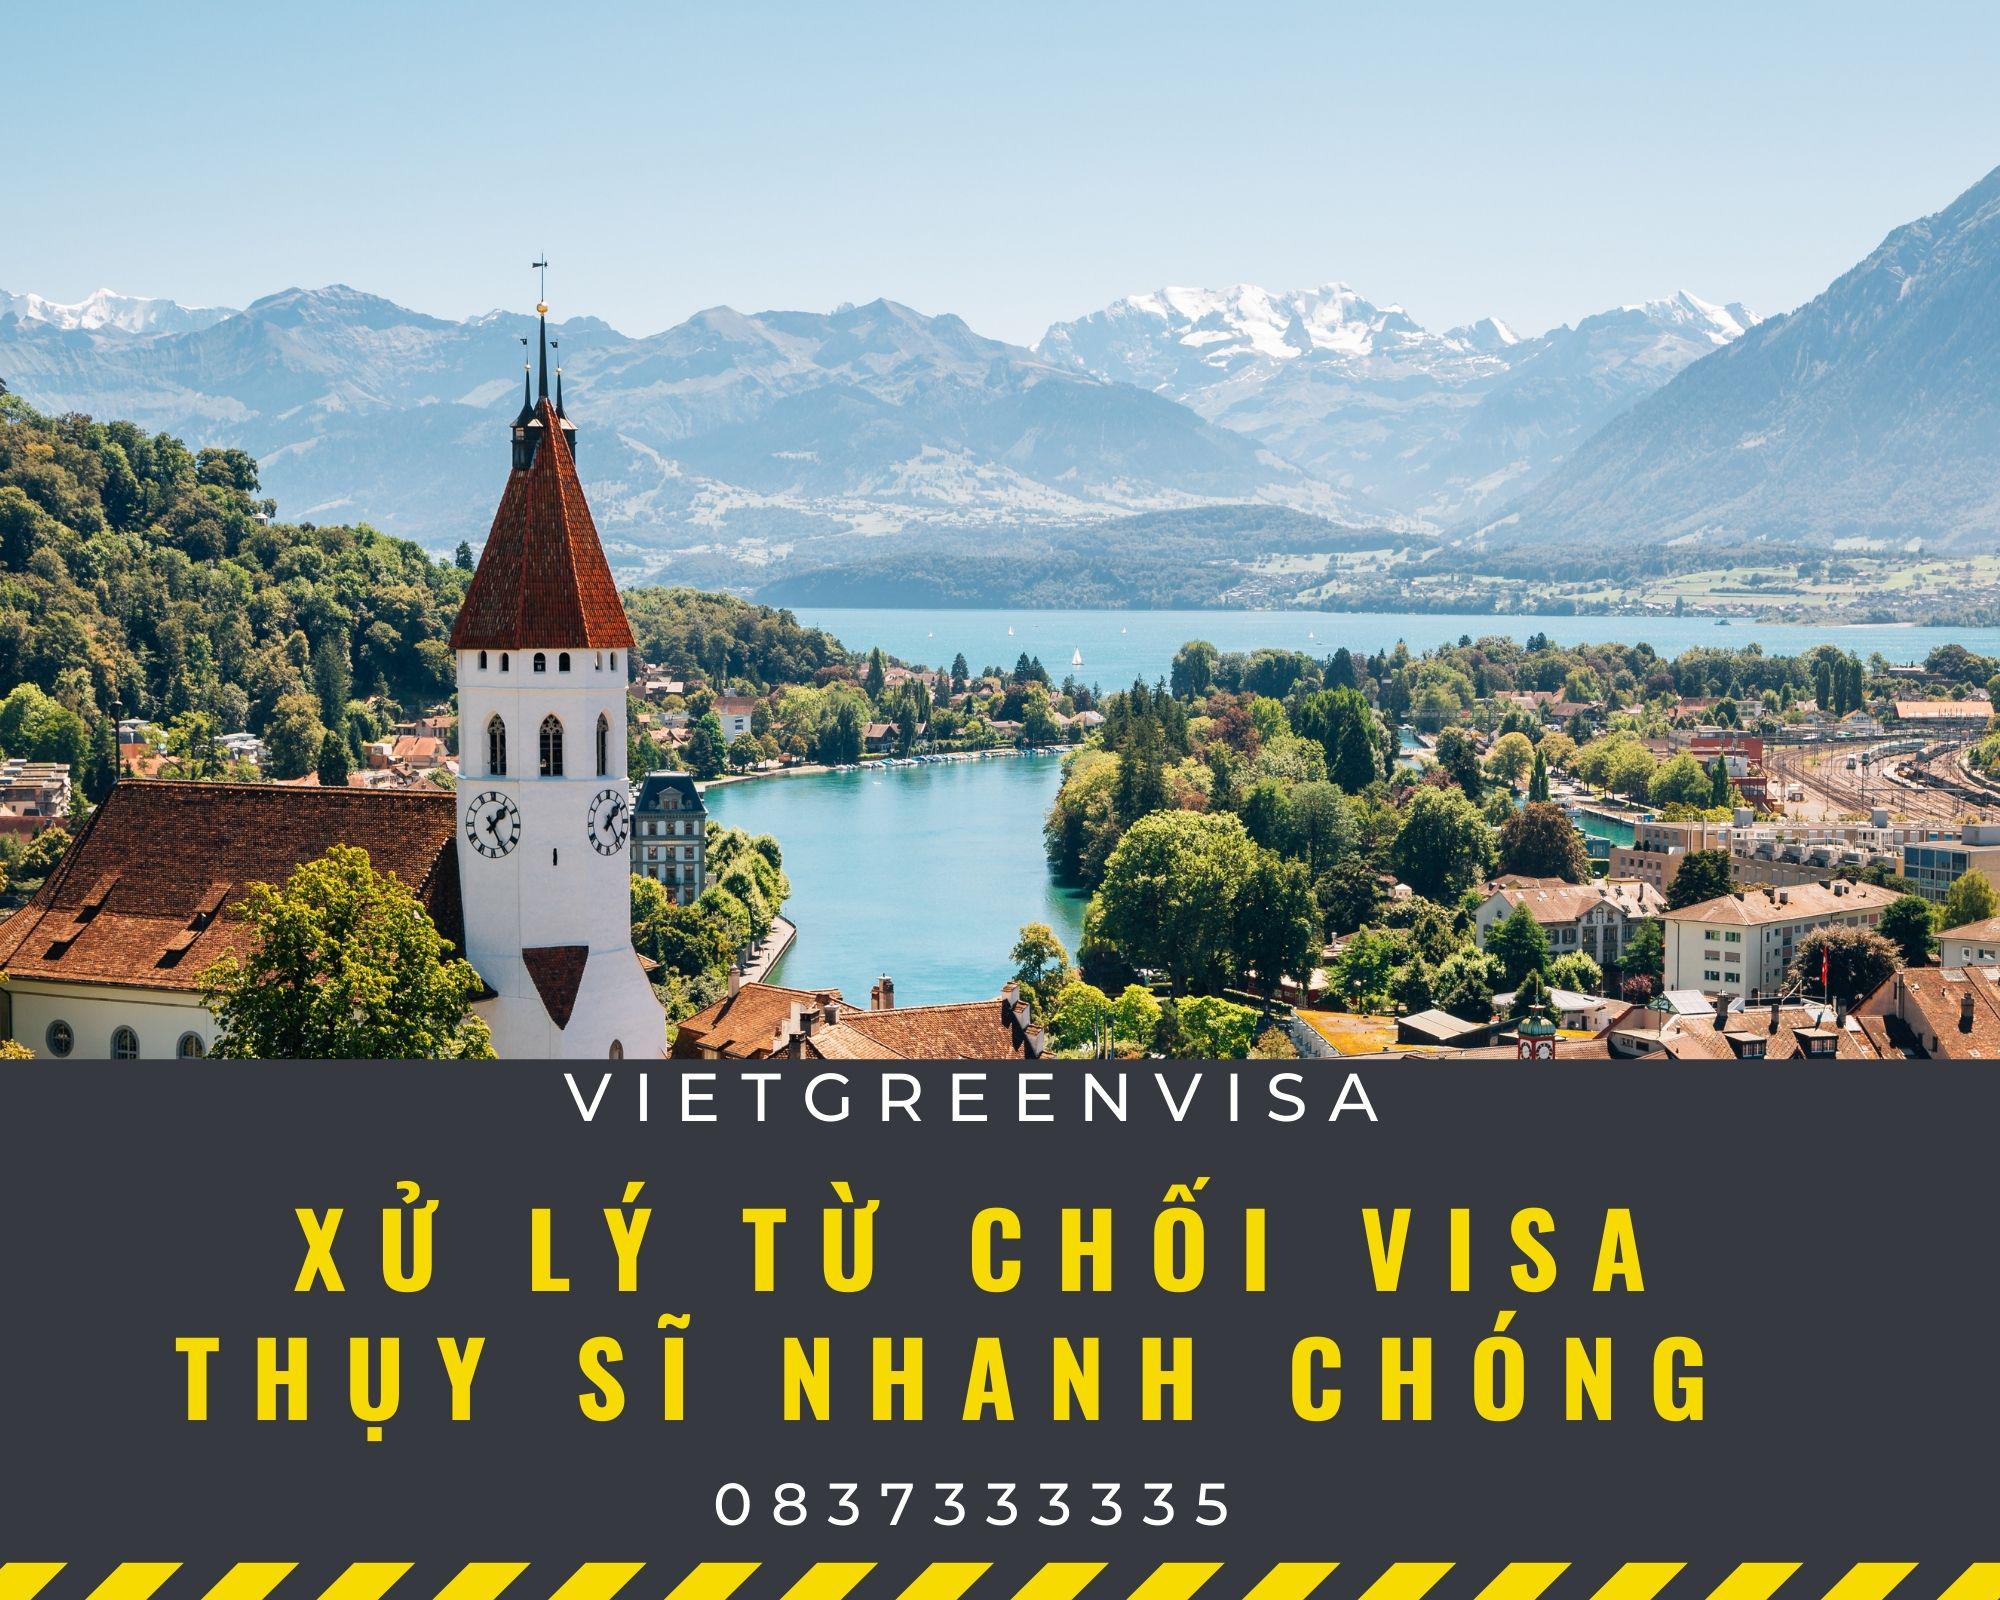 Xử lý visa Thụy Sĩ  bị từ chối nhanh chóng | Viet Green Visa